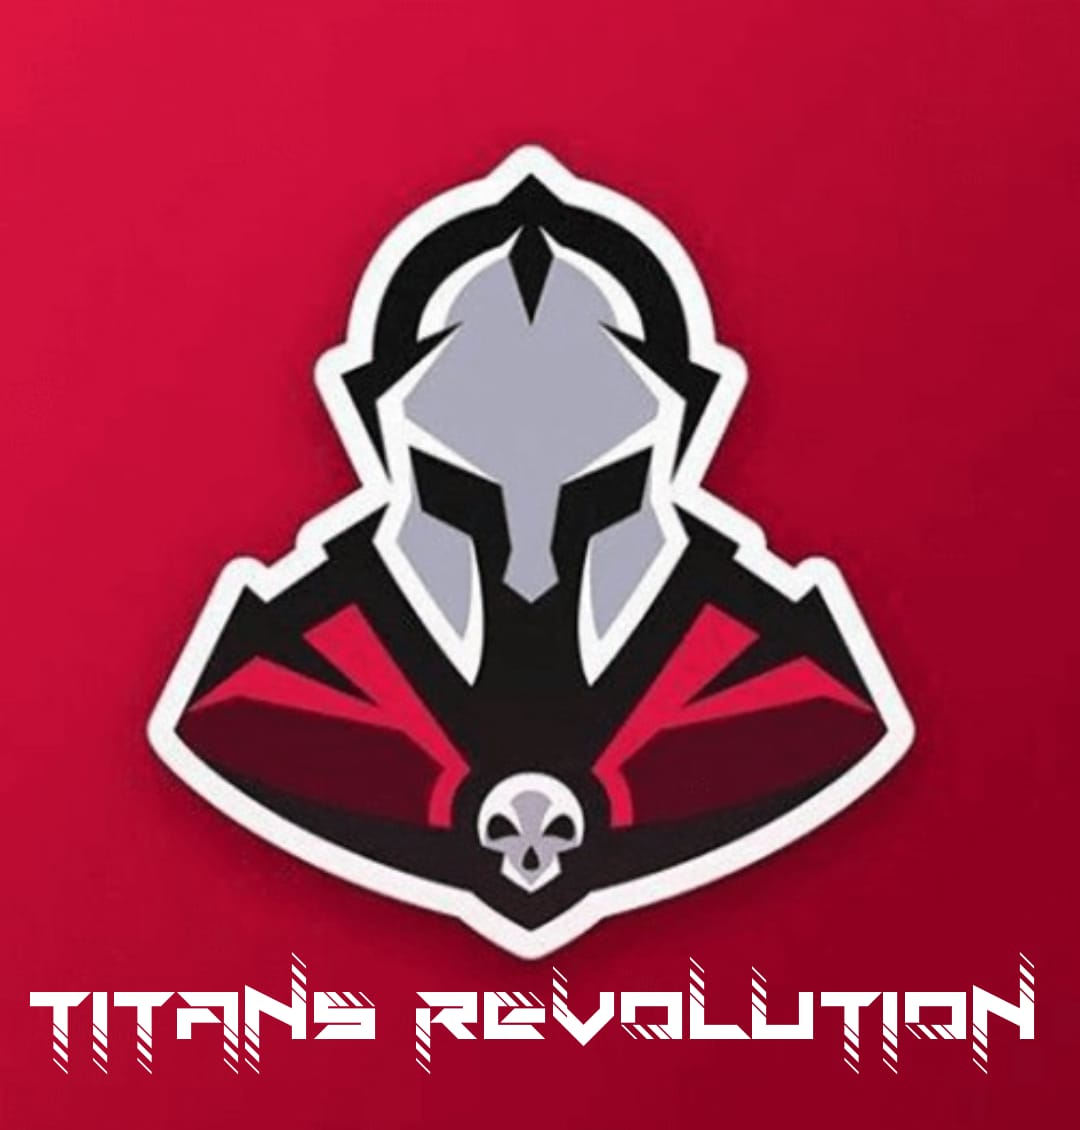 Titanes Revolution